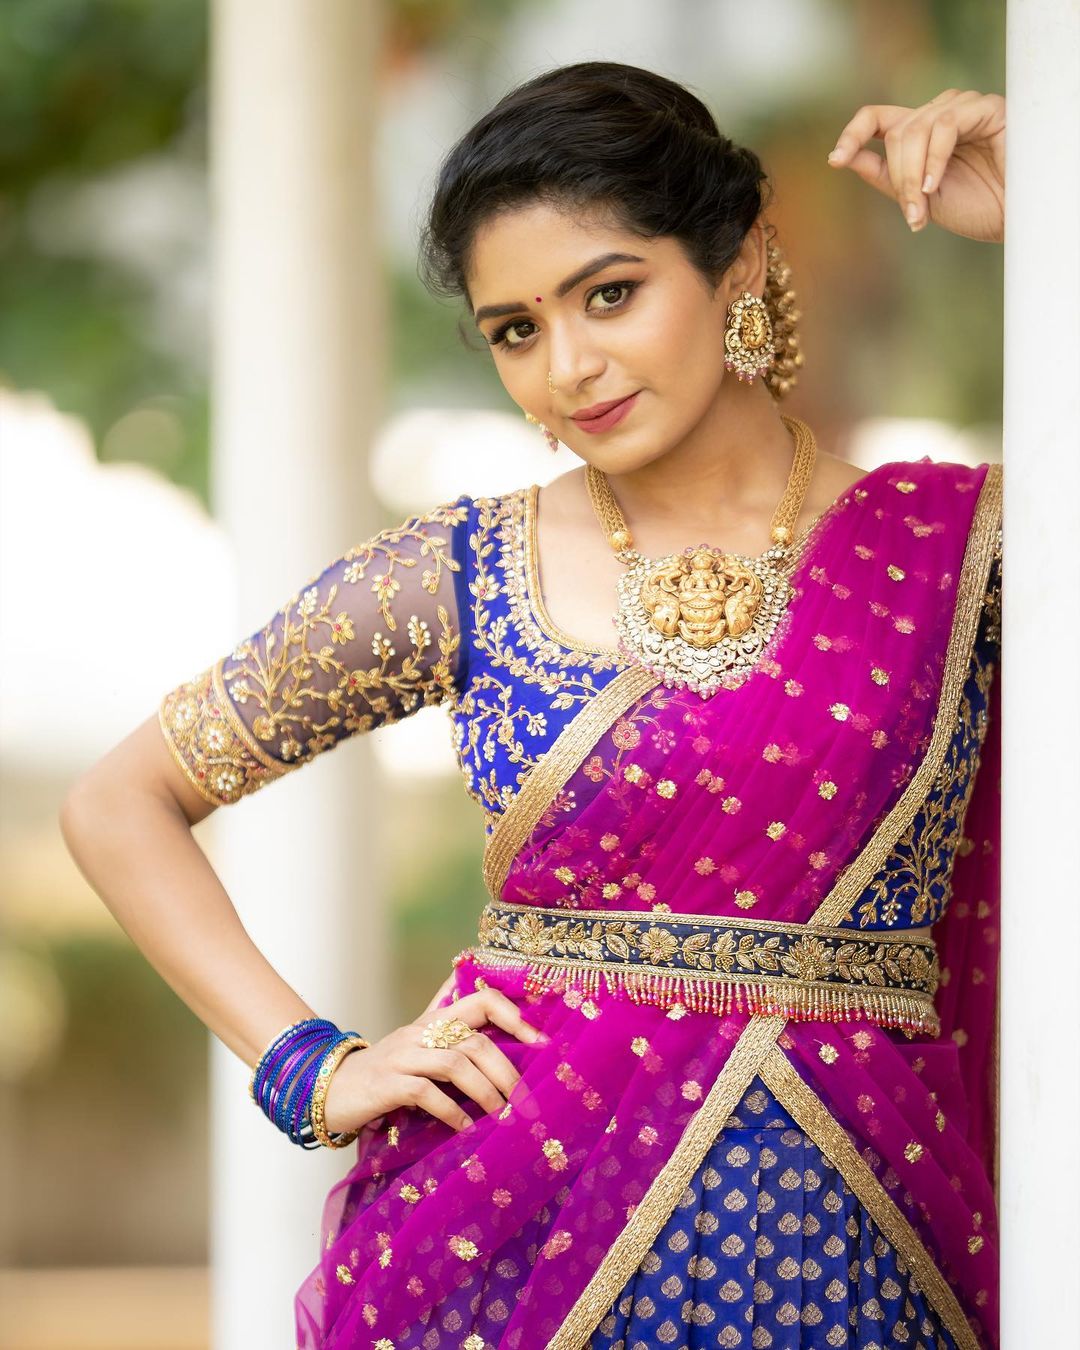 Actress Aditi Shankar new cute looks in half saree Photos